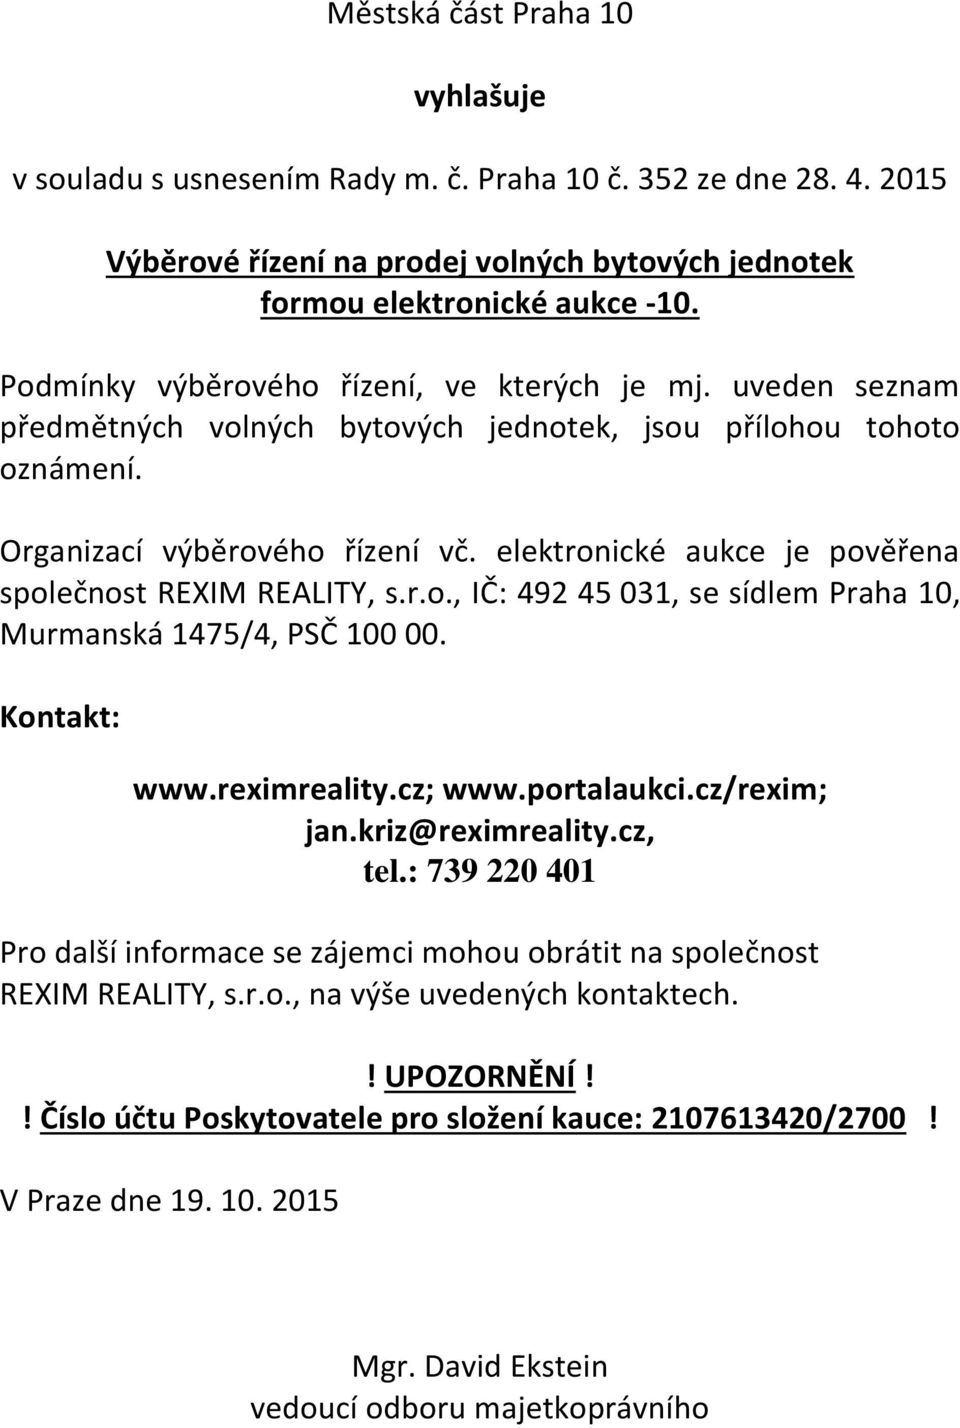 elektronické aukce je pověřena společnost REXIM REALITY, s.r.o., IČ: 492 45 031, se sídlem Praha 10, Murmanská 1475/4, PSČ 100 00. Kontakt: www.reximreality.cz; www.portalaukci.cz/rexim; jan.